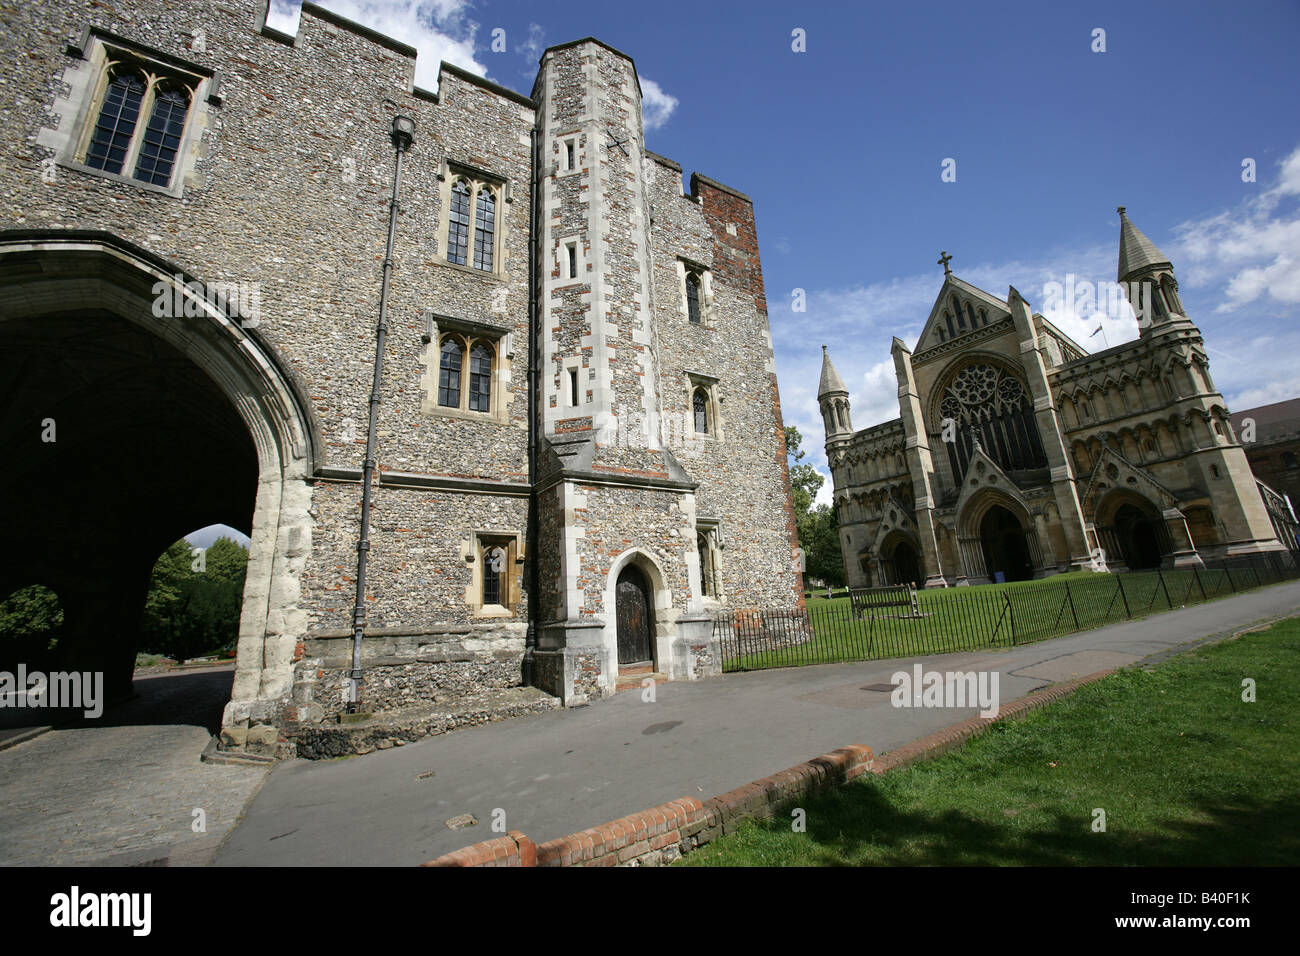 Ville de St Albans, Angleterre. L'Abbaye Gateway et façade ouest de la cathédrale anglicane et l'église de l'abbaye de St Albans. Banque D'Images